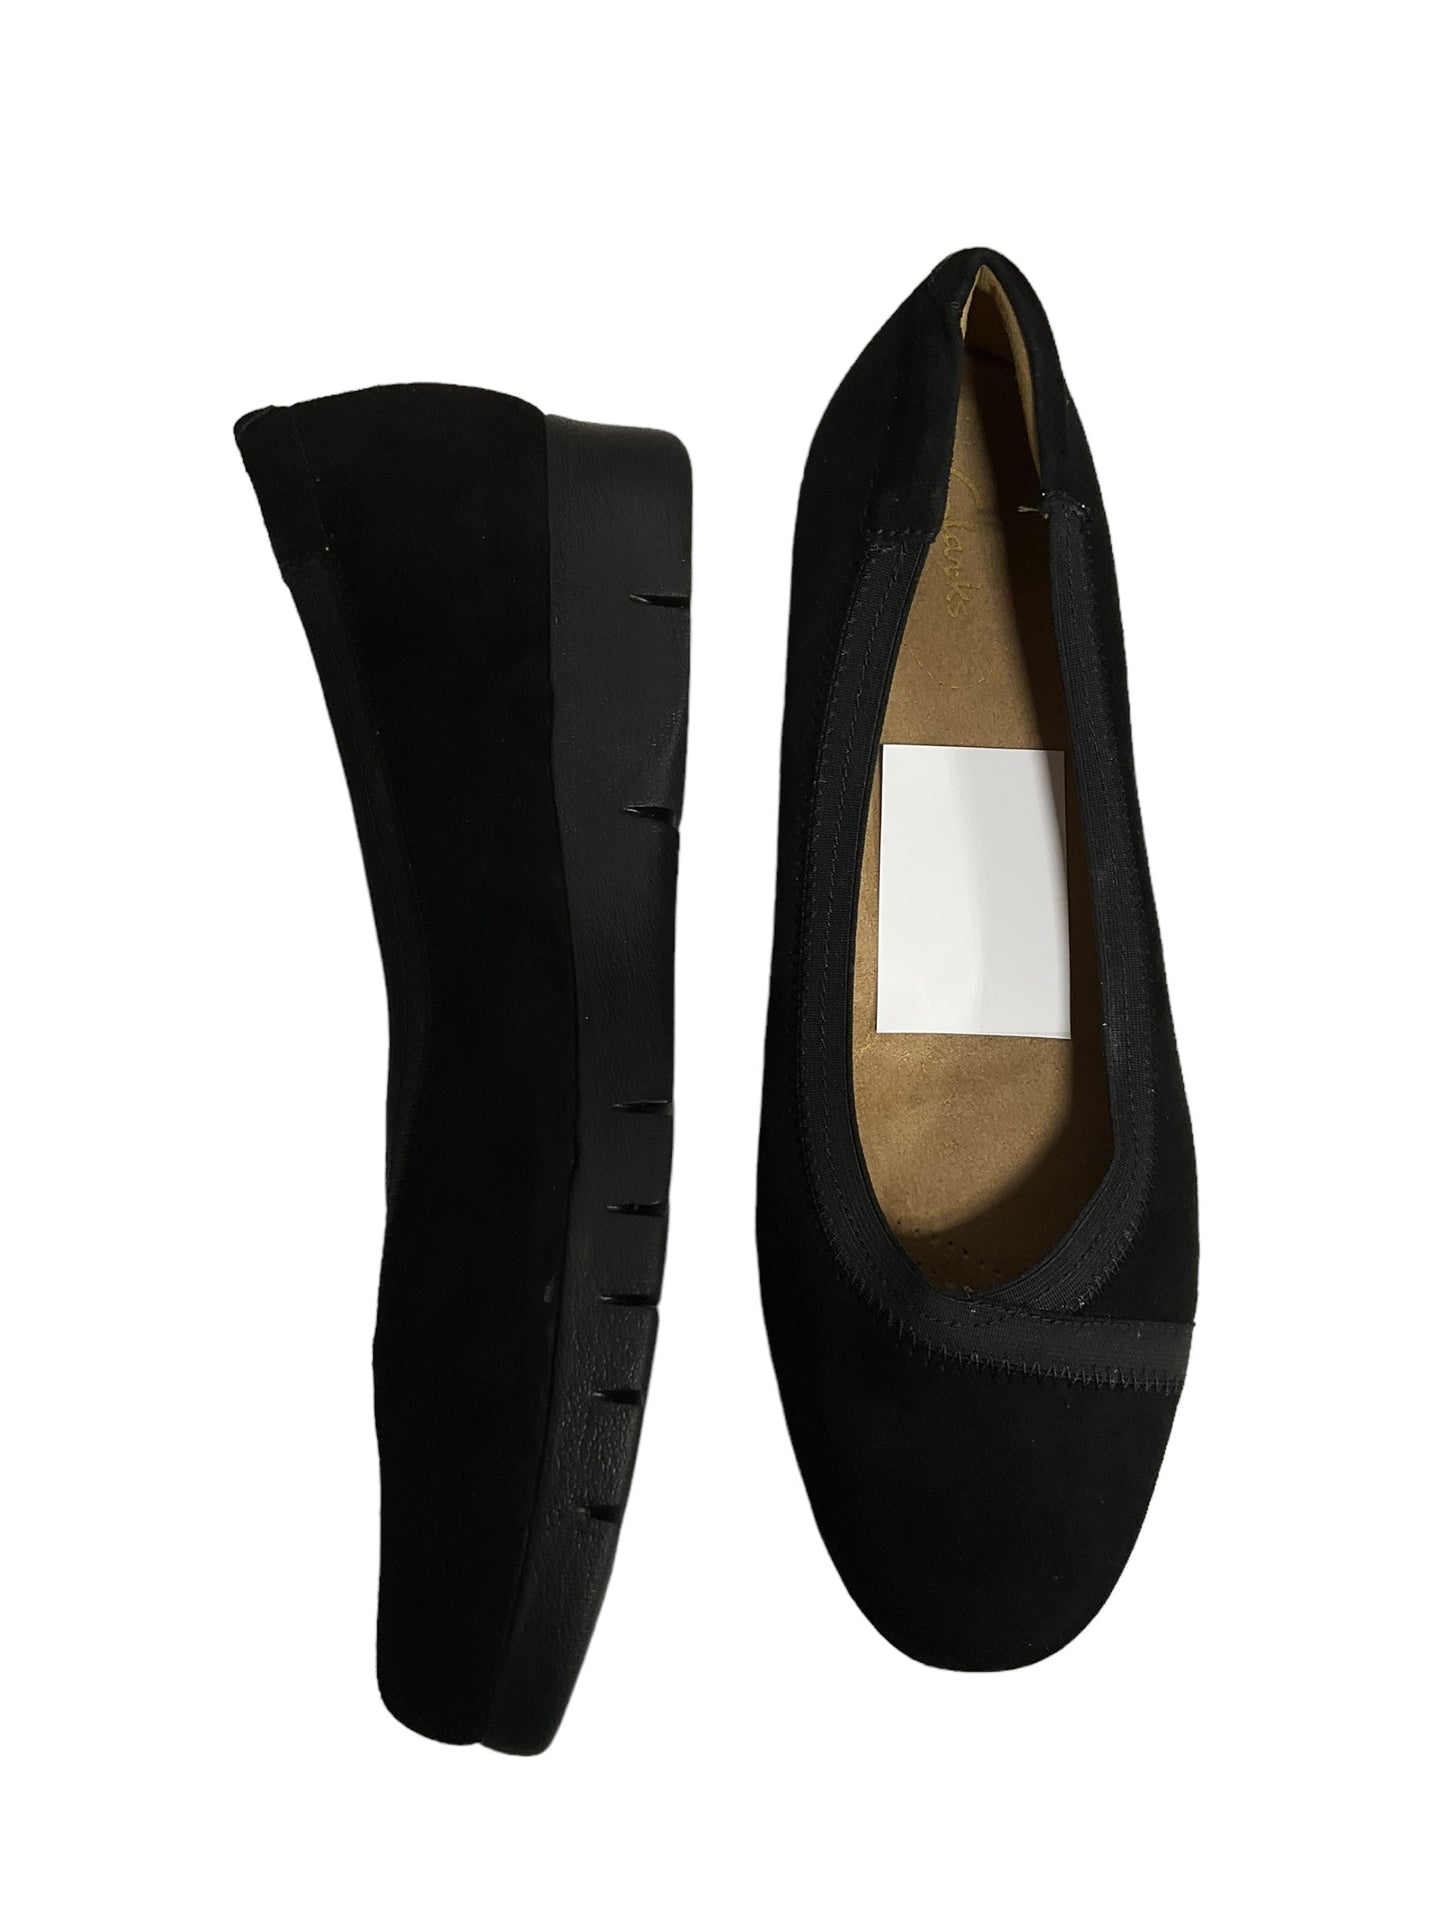 Black Shoes Flats Clarks, Size 10